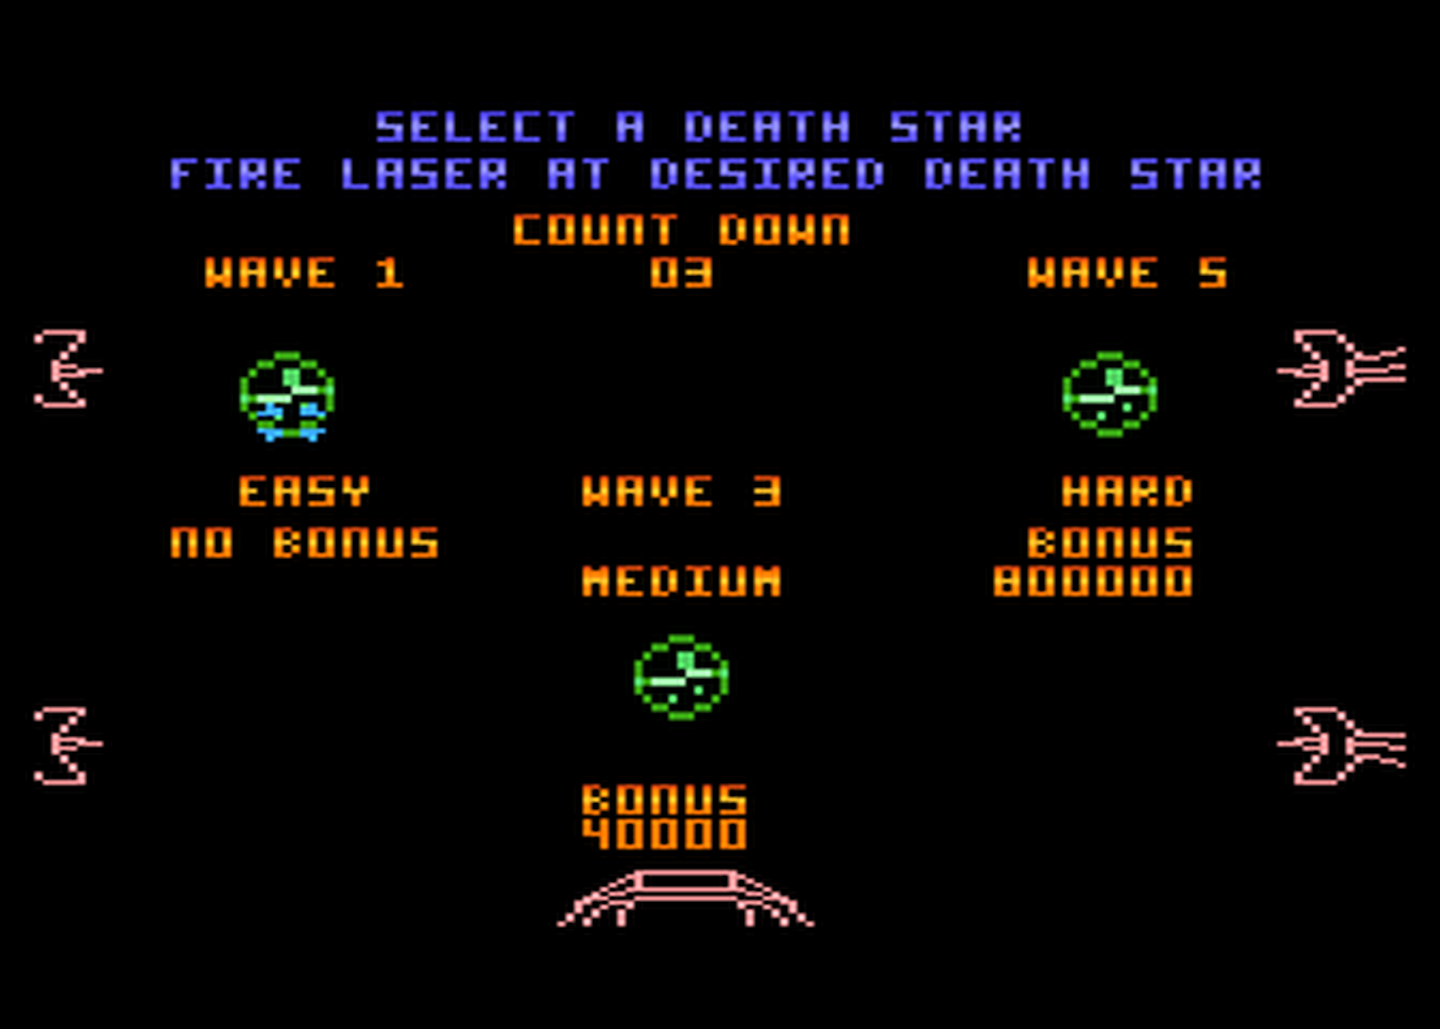 Atari GameBase Star_Wars Domark 1988